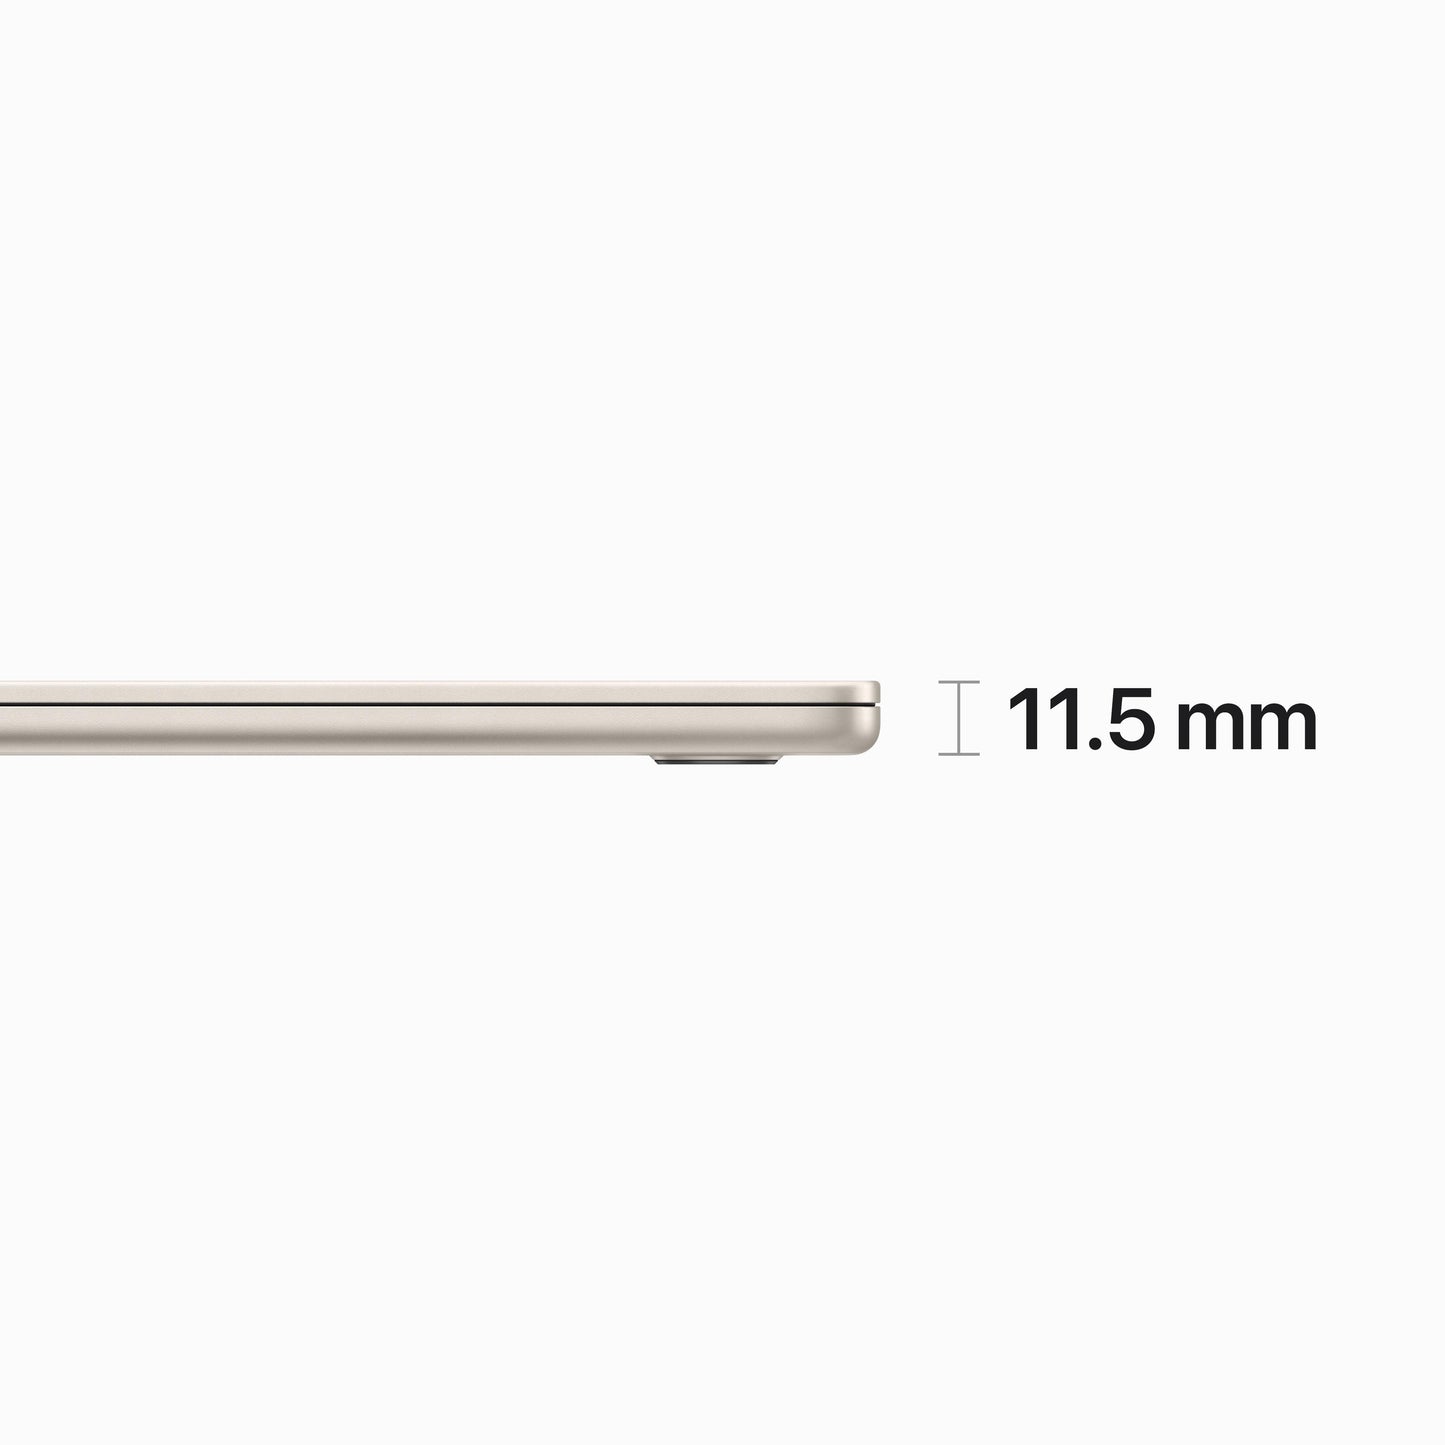 EOL MacBook Air 15 pouces: Puce Apple M2 avec CPU 8 cœurs et GPU 10 cœurs, 8 Go, 256 Go - Lumière stellaire (Azerty FR)